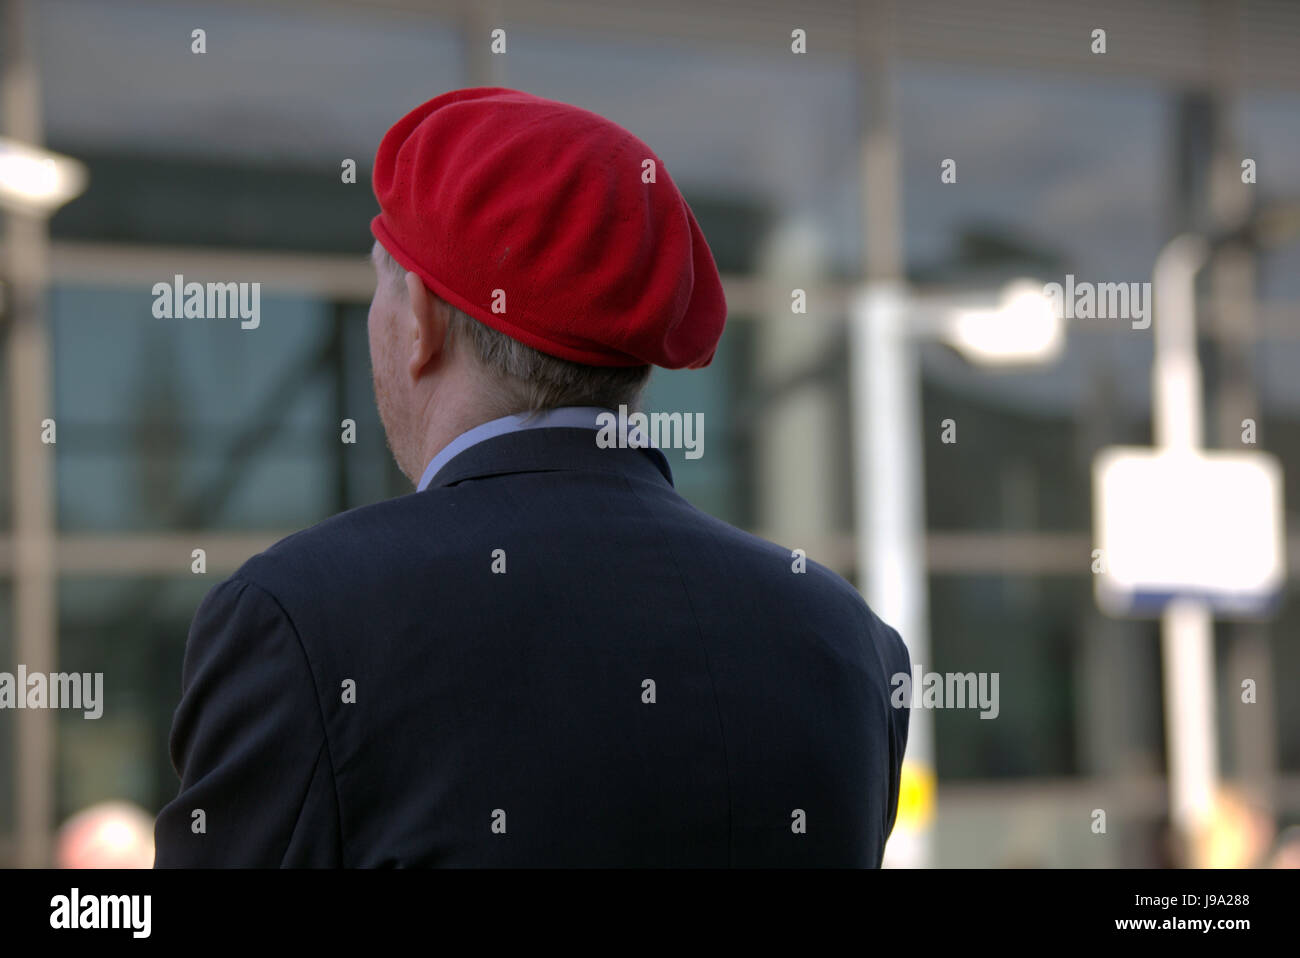 Hombre en una estación de tren en una boina roja bokeh de fondo fuera de foco Foto de stock